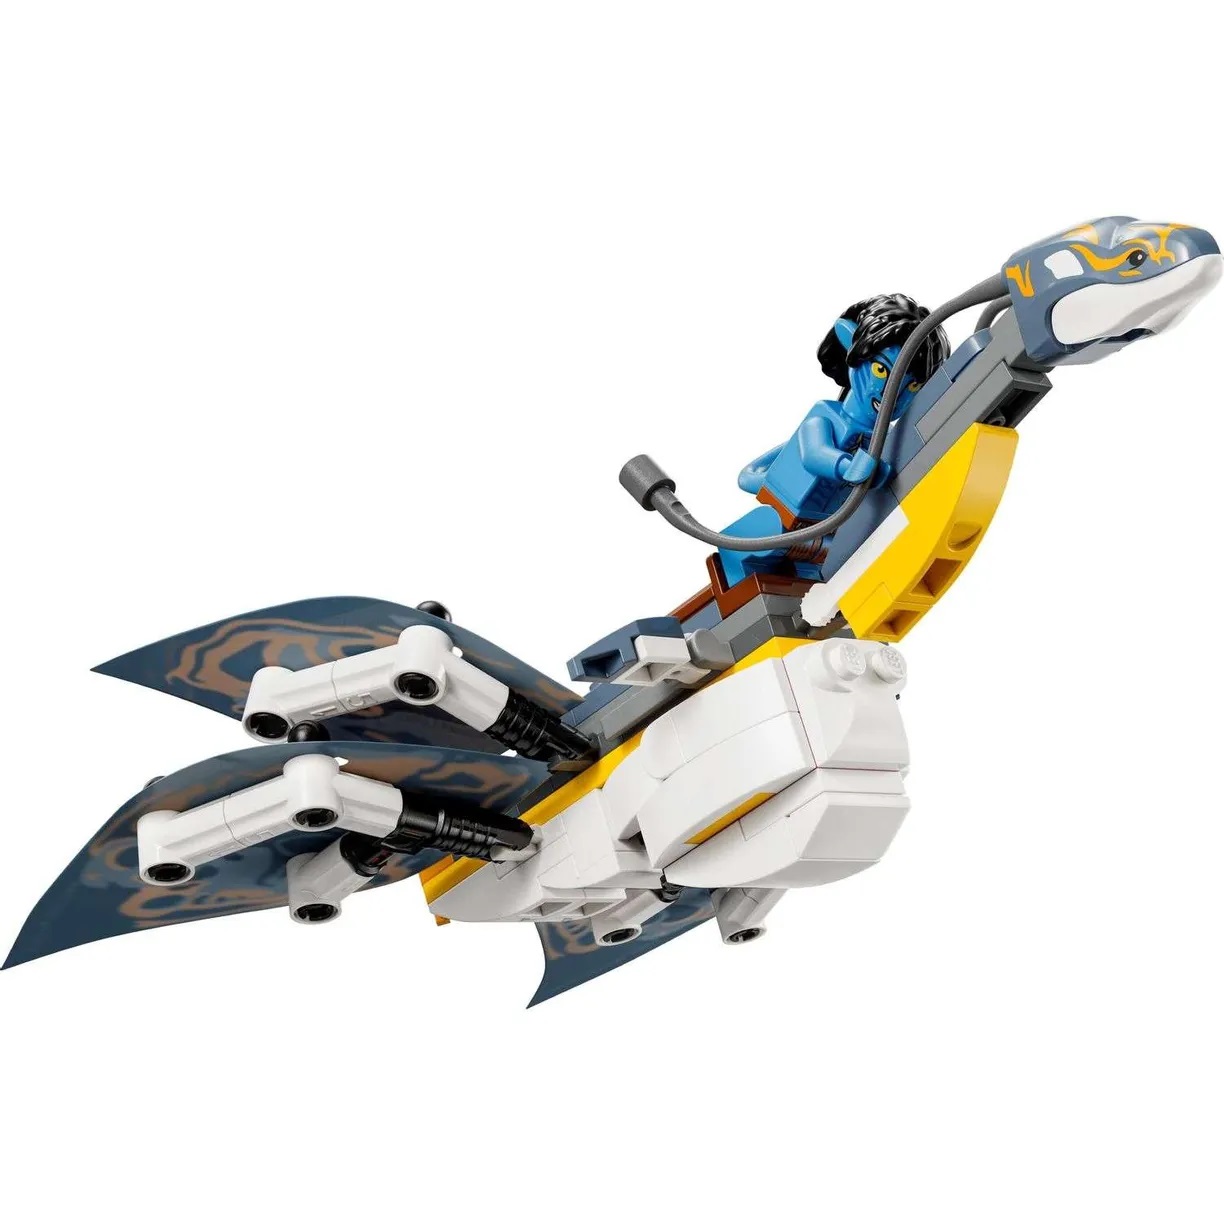 Lego Avatar 75575 Открытие Илу